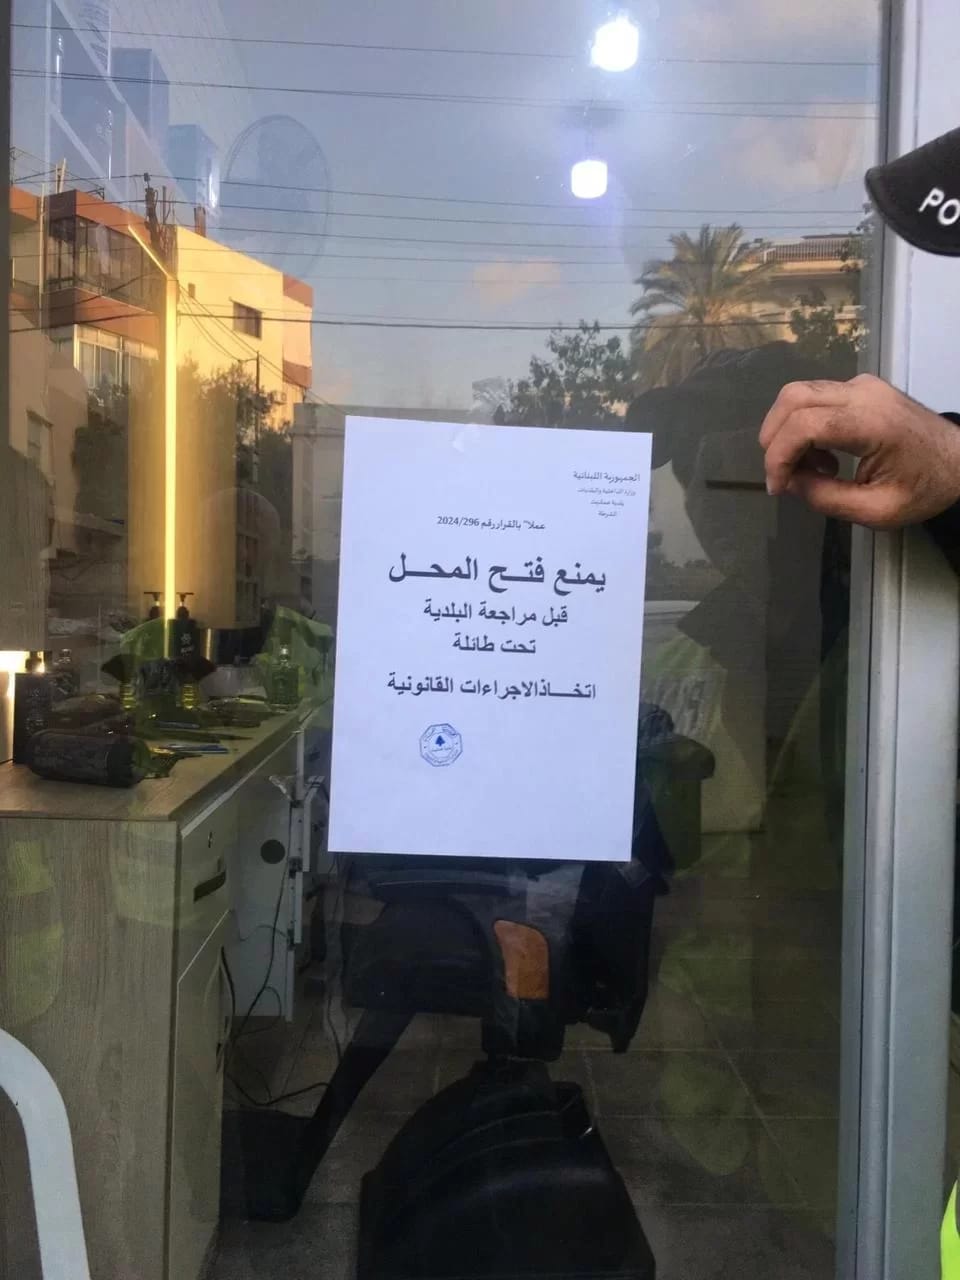 بلدية عمشيت تعلن عن اتخاذ إجراءات مشددة حول النازحين السوريين!